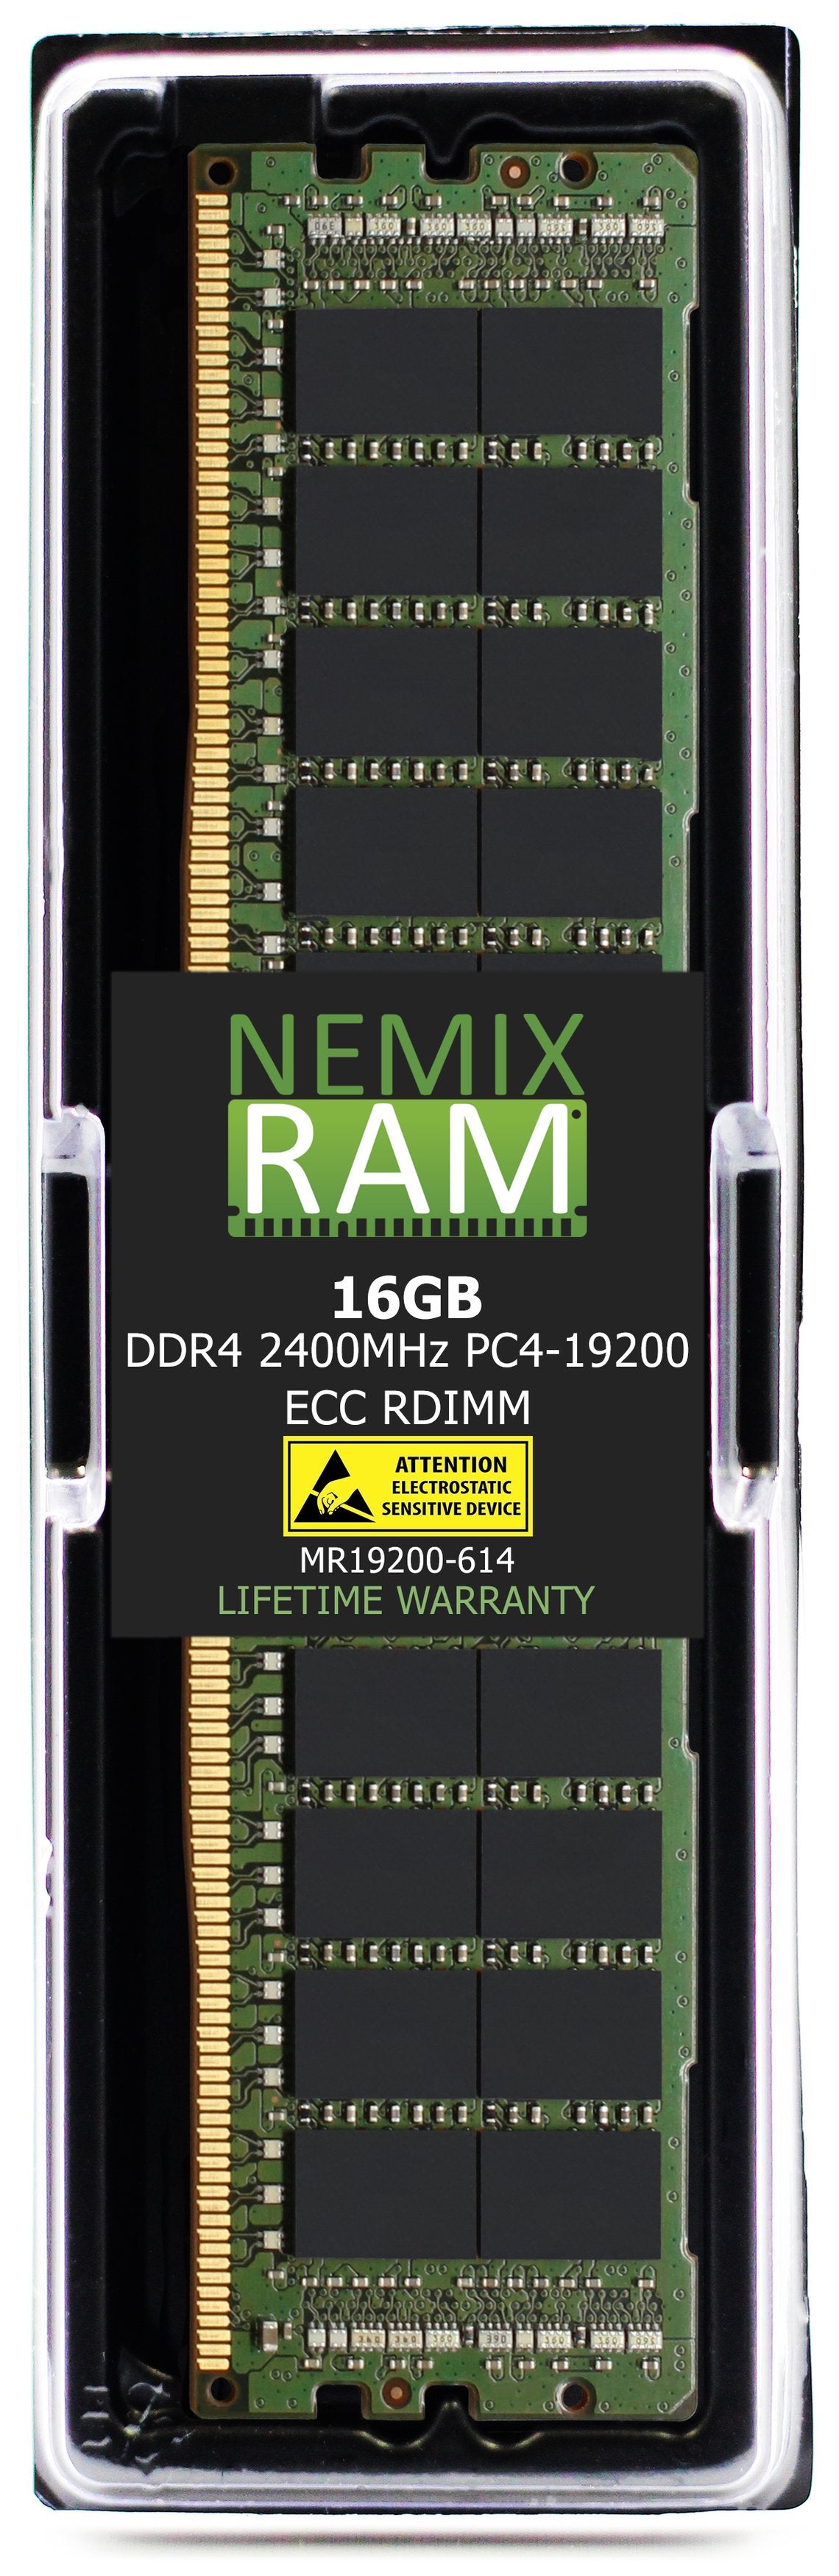 Hynix HMA82GR7AFR4N-UH 16GB DDR4 2400MHZ PC4-19200 RDIMM Compatible Memory Module